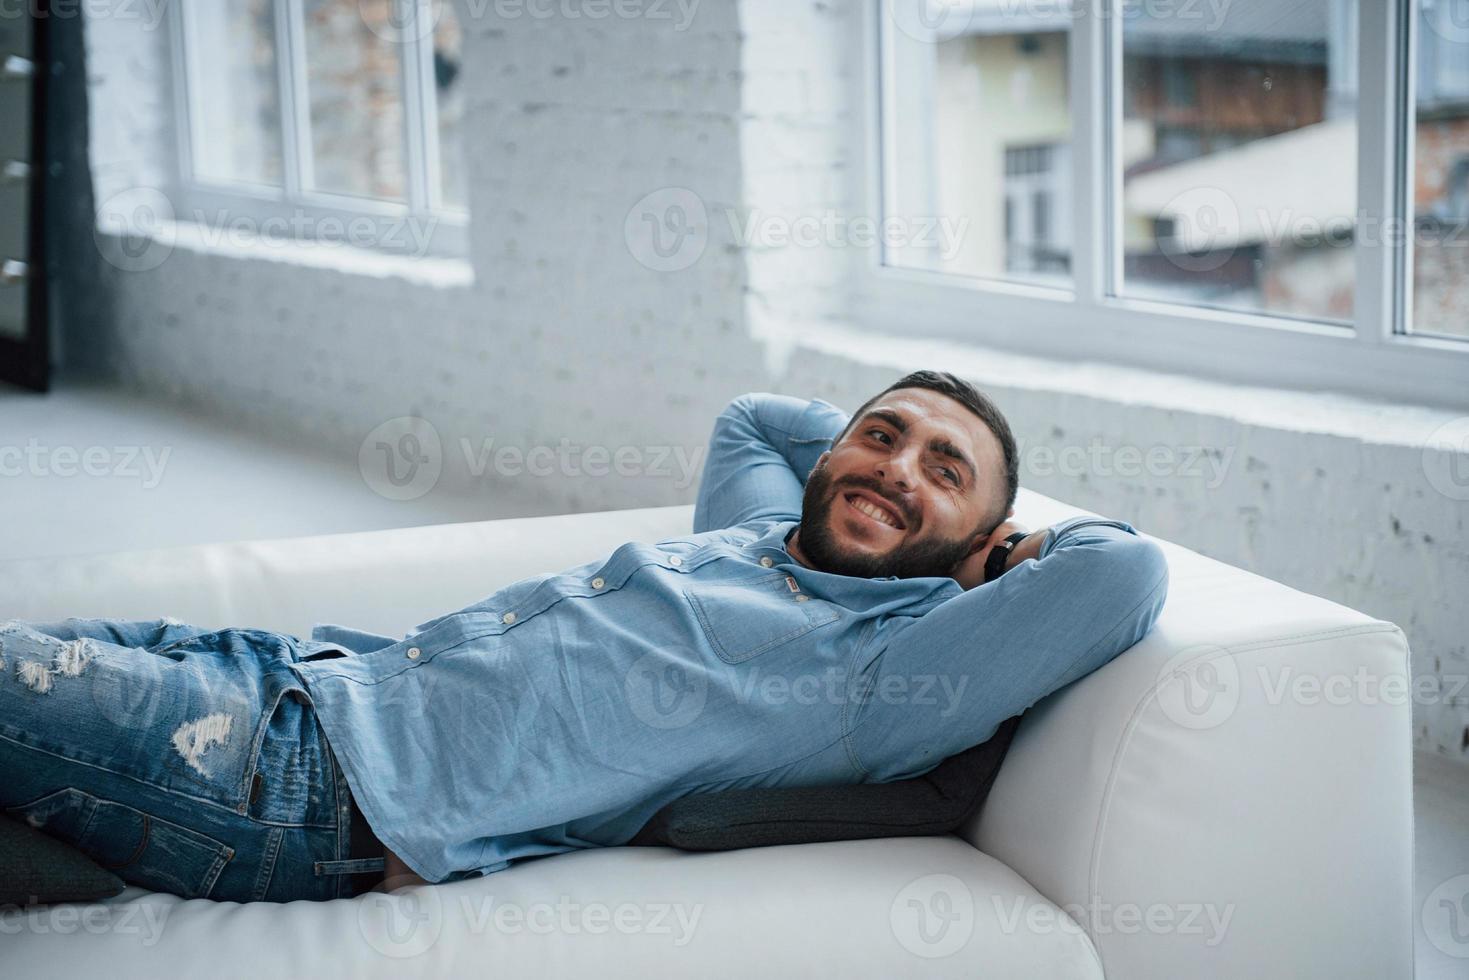 Chico joven con barba sonriendo y descansando mientras está acostado en la cama foto